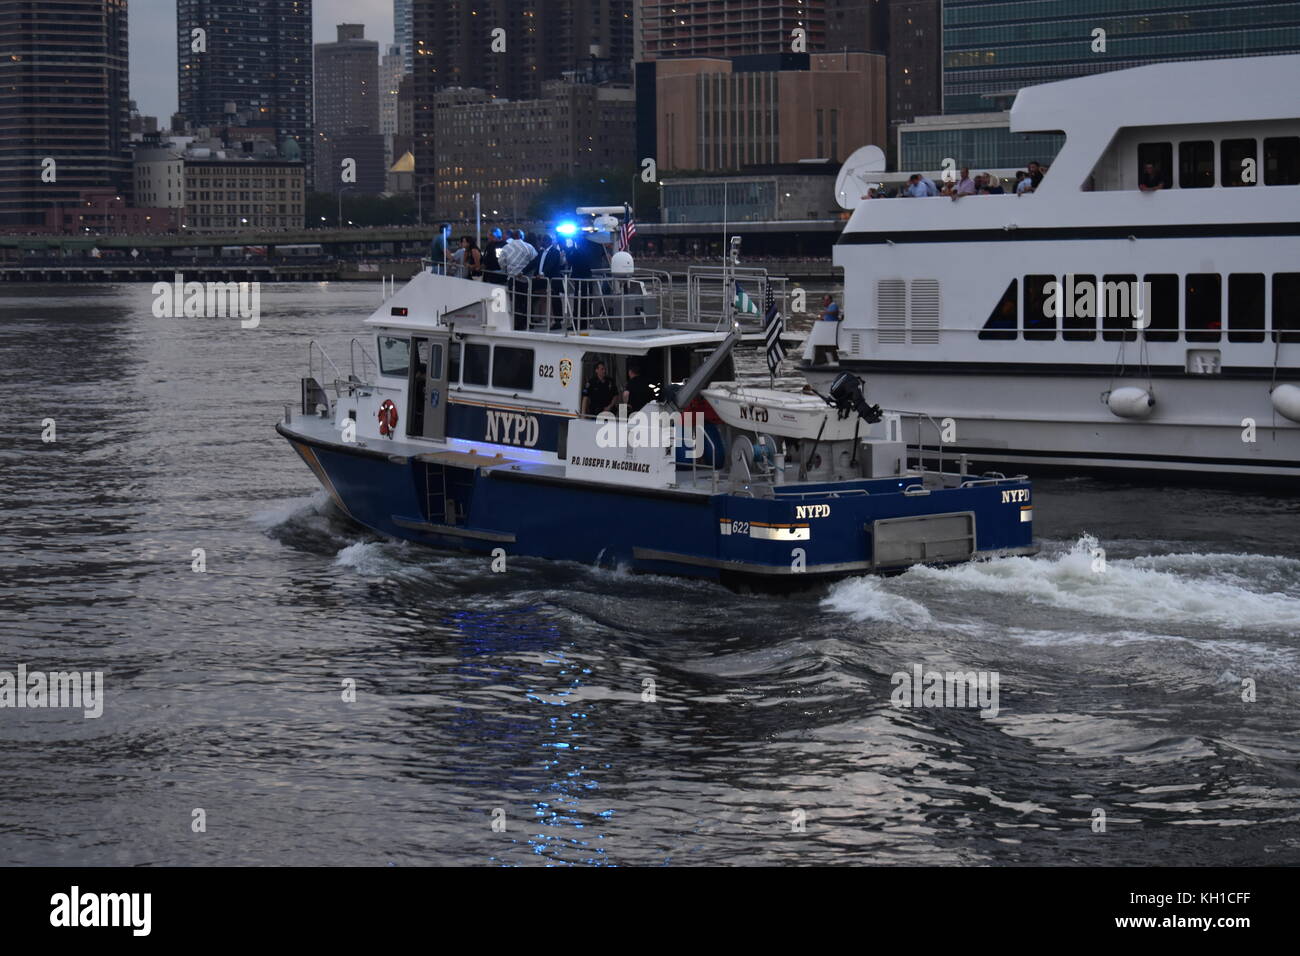 Le service de police de New York embarque en patrouille lors des célébrations du 4 juillet à New York, prises de l'île Roosevelt Banque D'Images